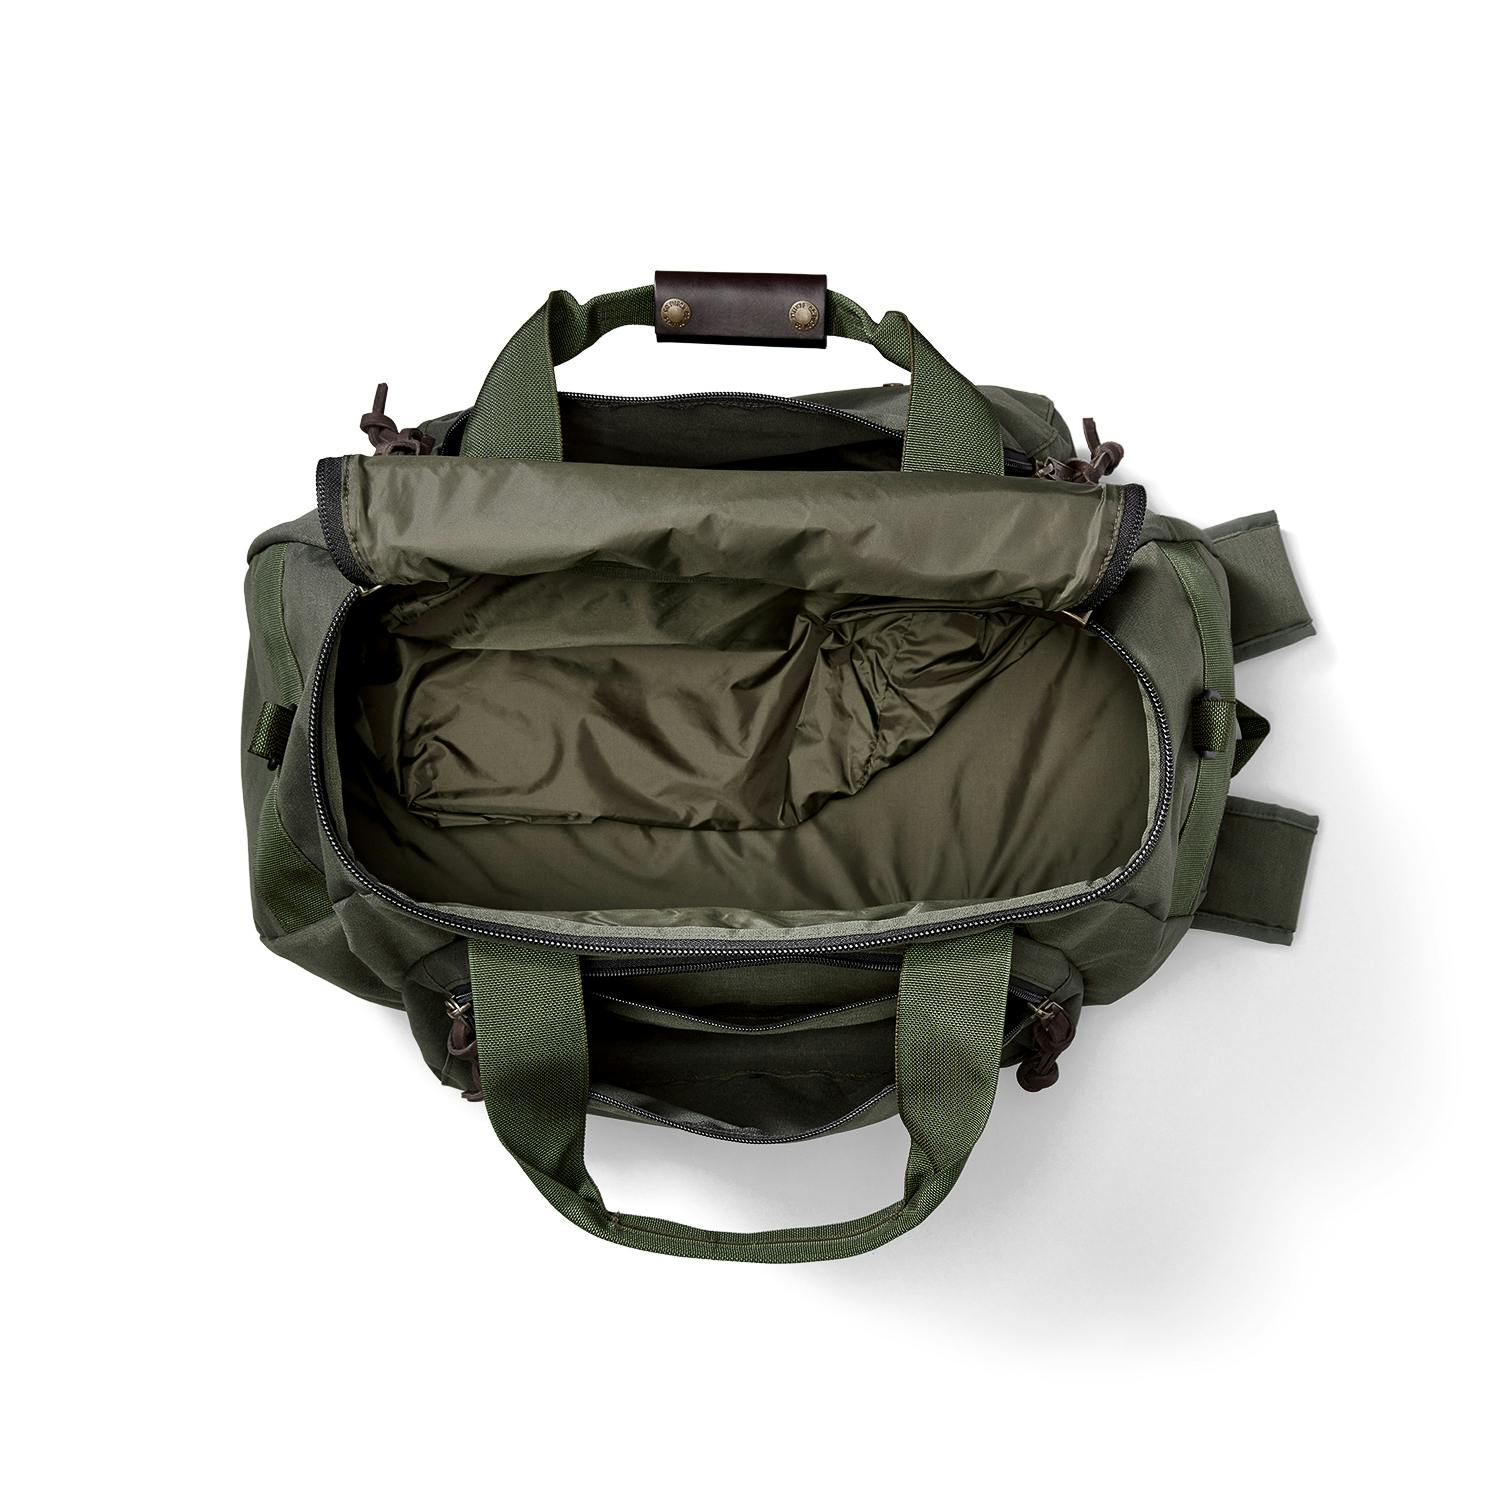 Filson Ballistic Nylon Duffel Backpack Hybrid